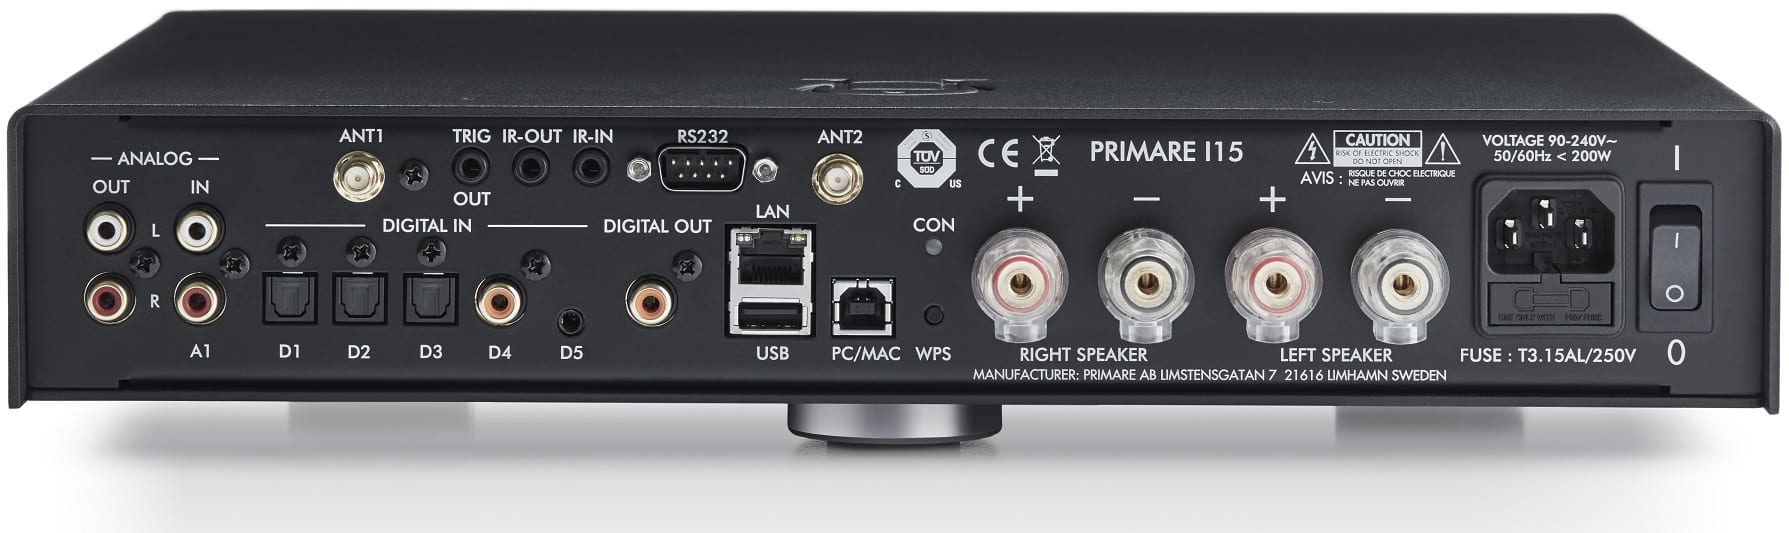 Primare I15 Prisma titanium - achterkant - Stereo receiver